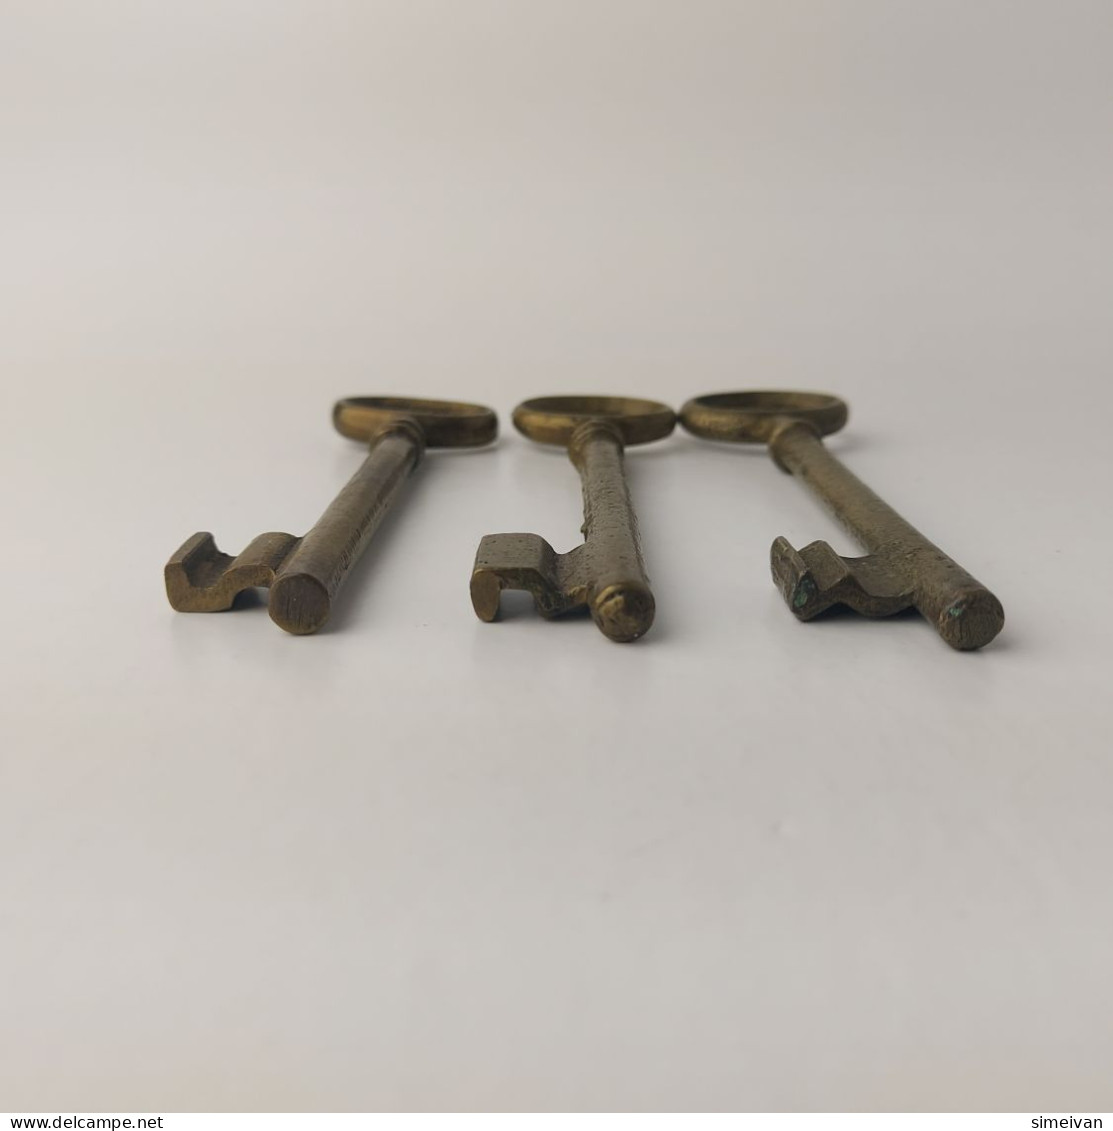 Vintage Lot of 3 Different Brass Keys Skeleton Keys 10 cm #5548